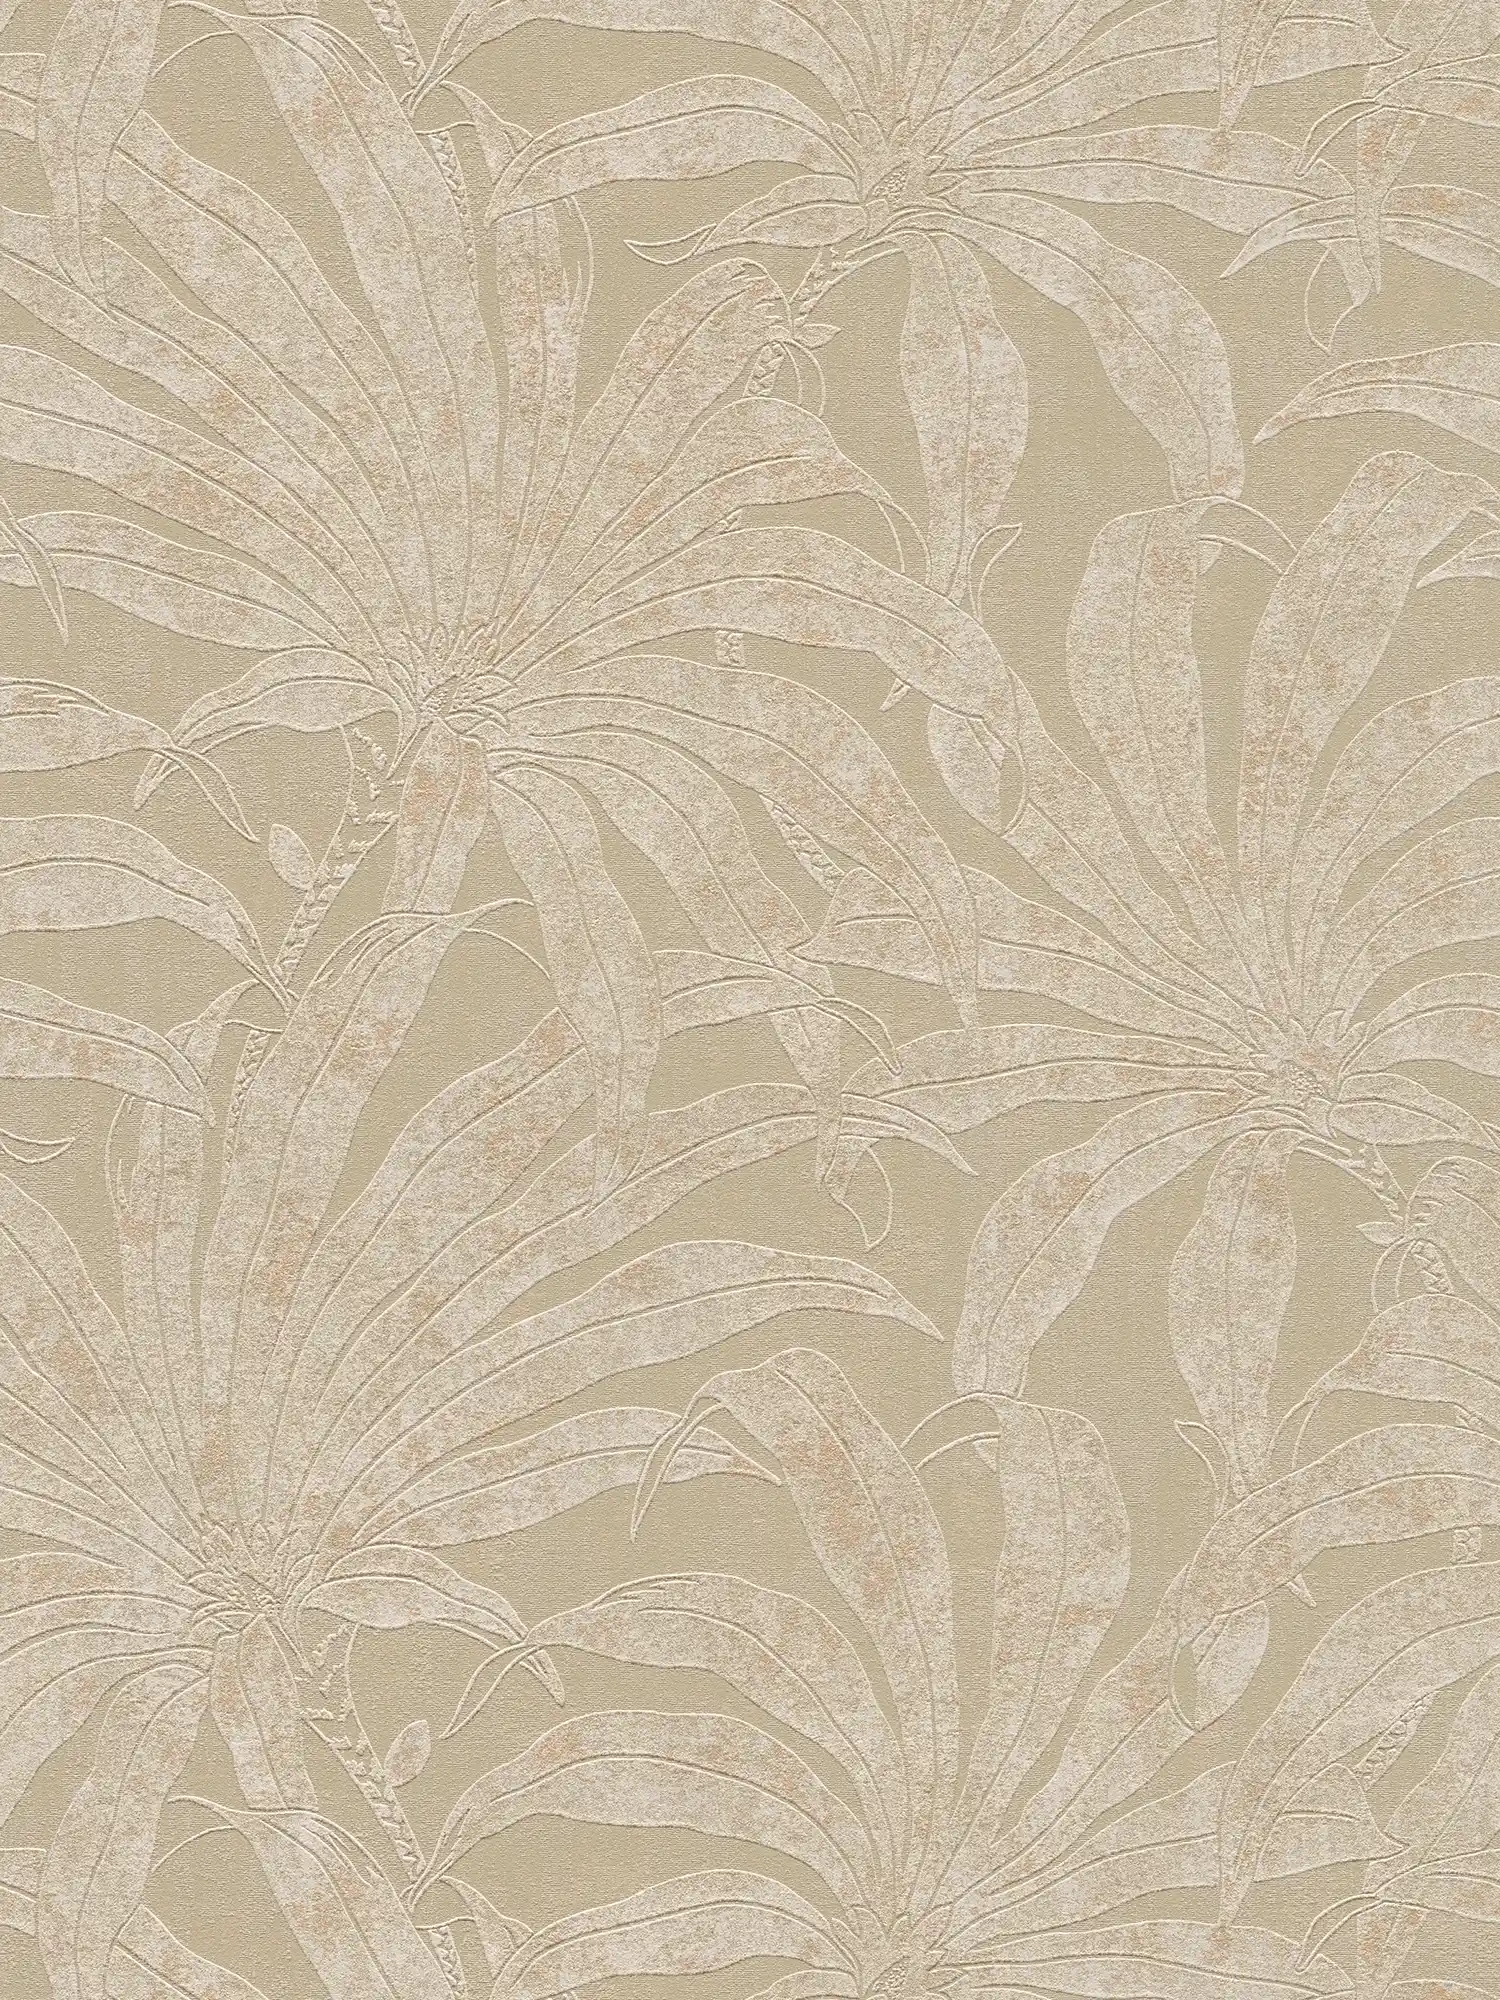 Mustertapete mit botanischen Dschungelblättern – Grau , Weiß, Gold
